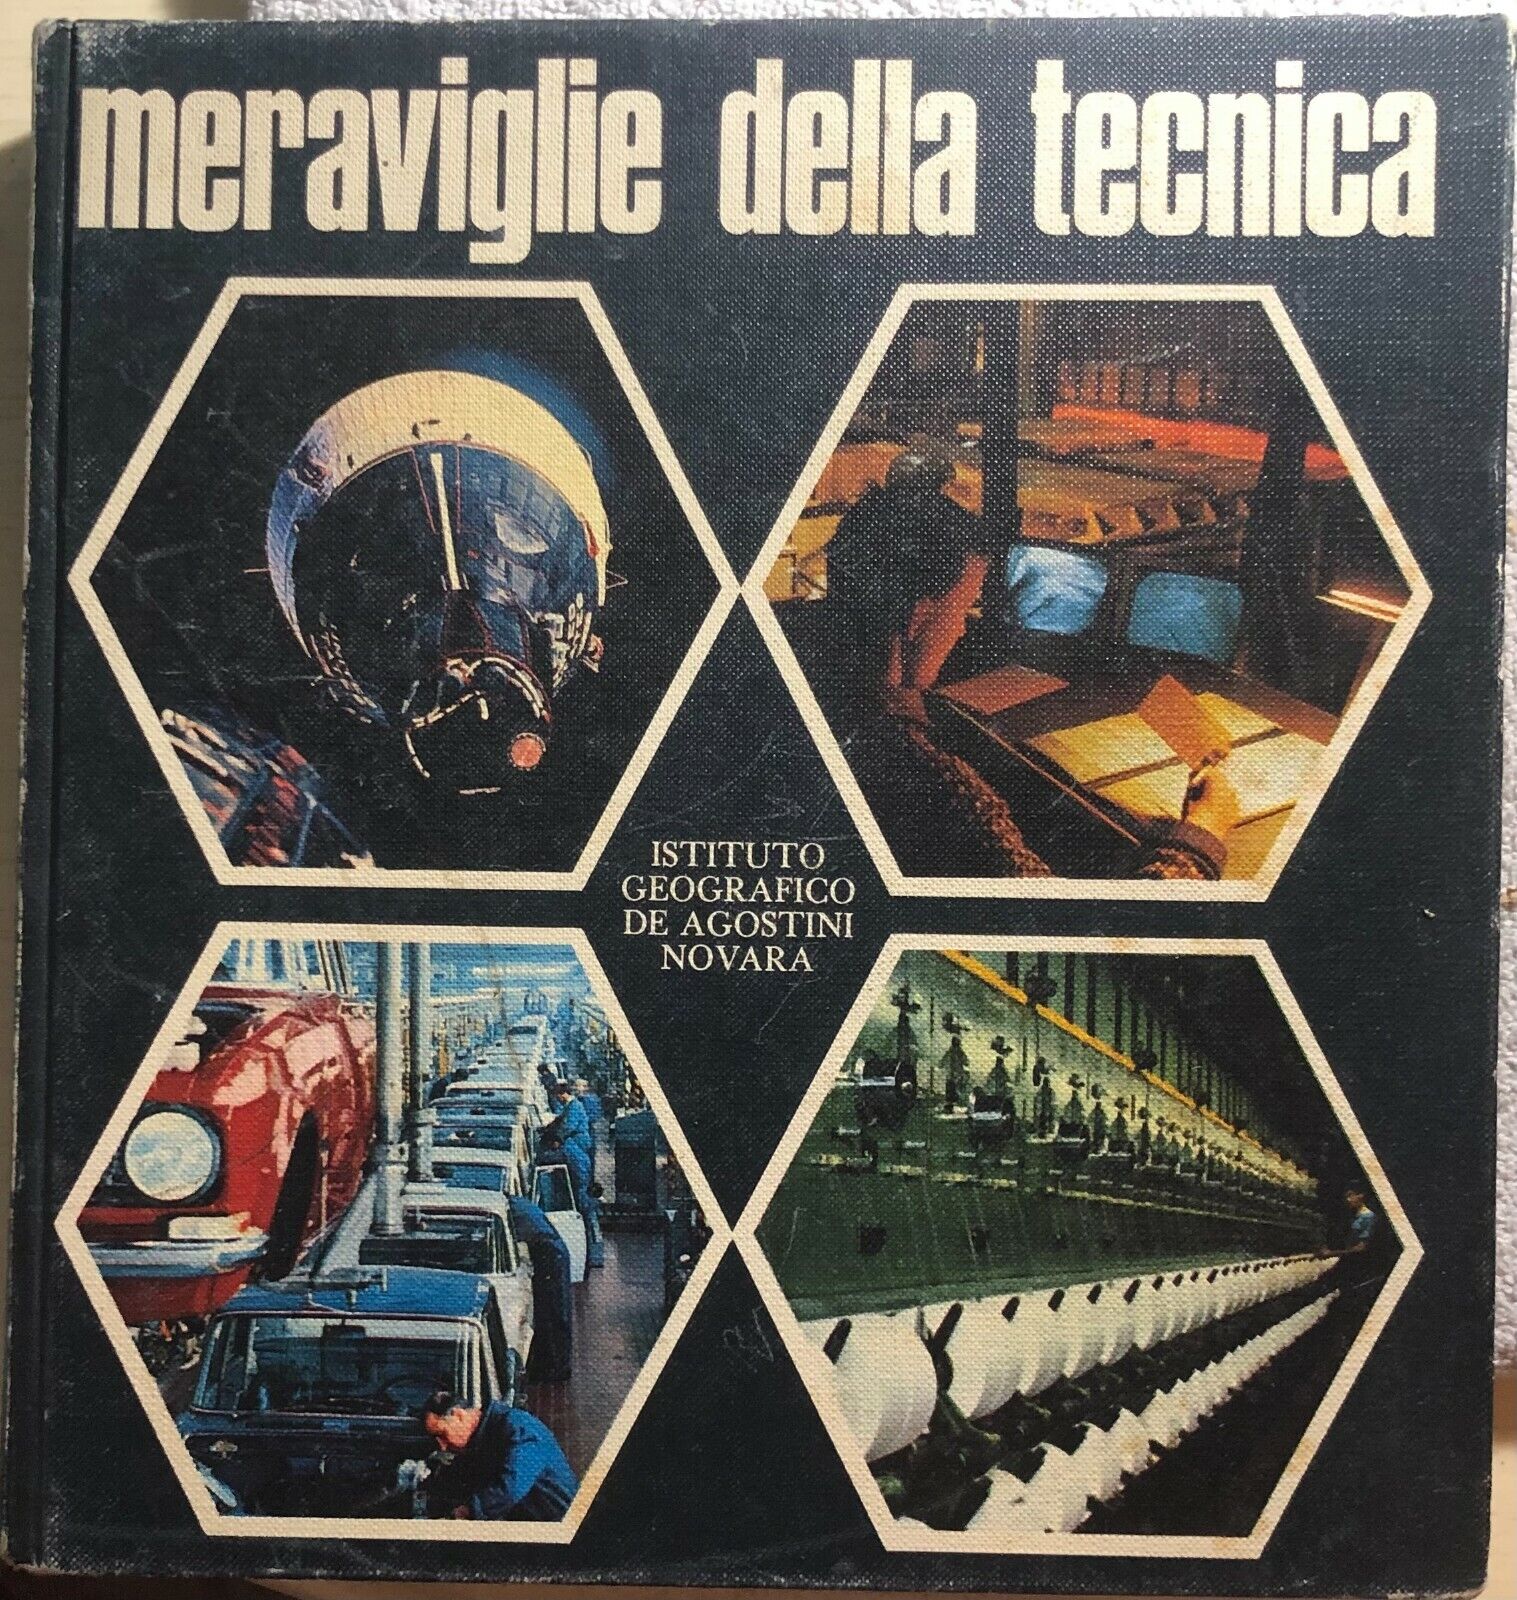 Meraviglie della tecnica di Aa.vv.,  1971,  Istituto Geografico Deagostini